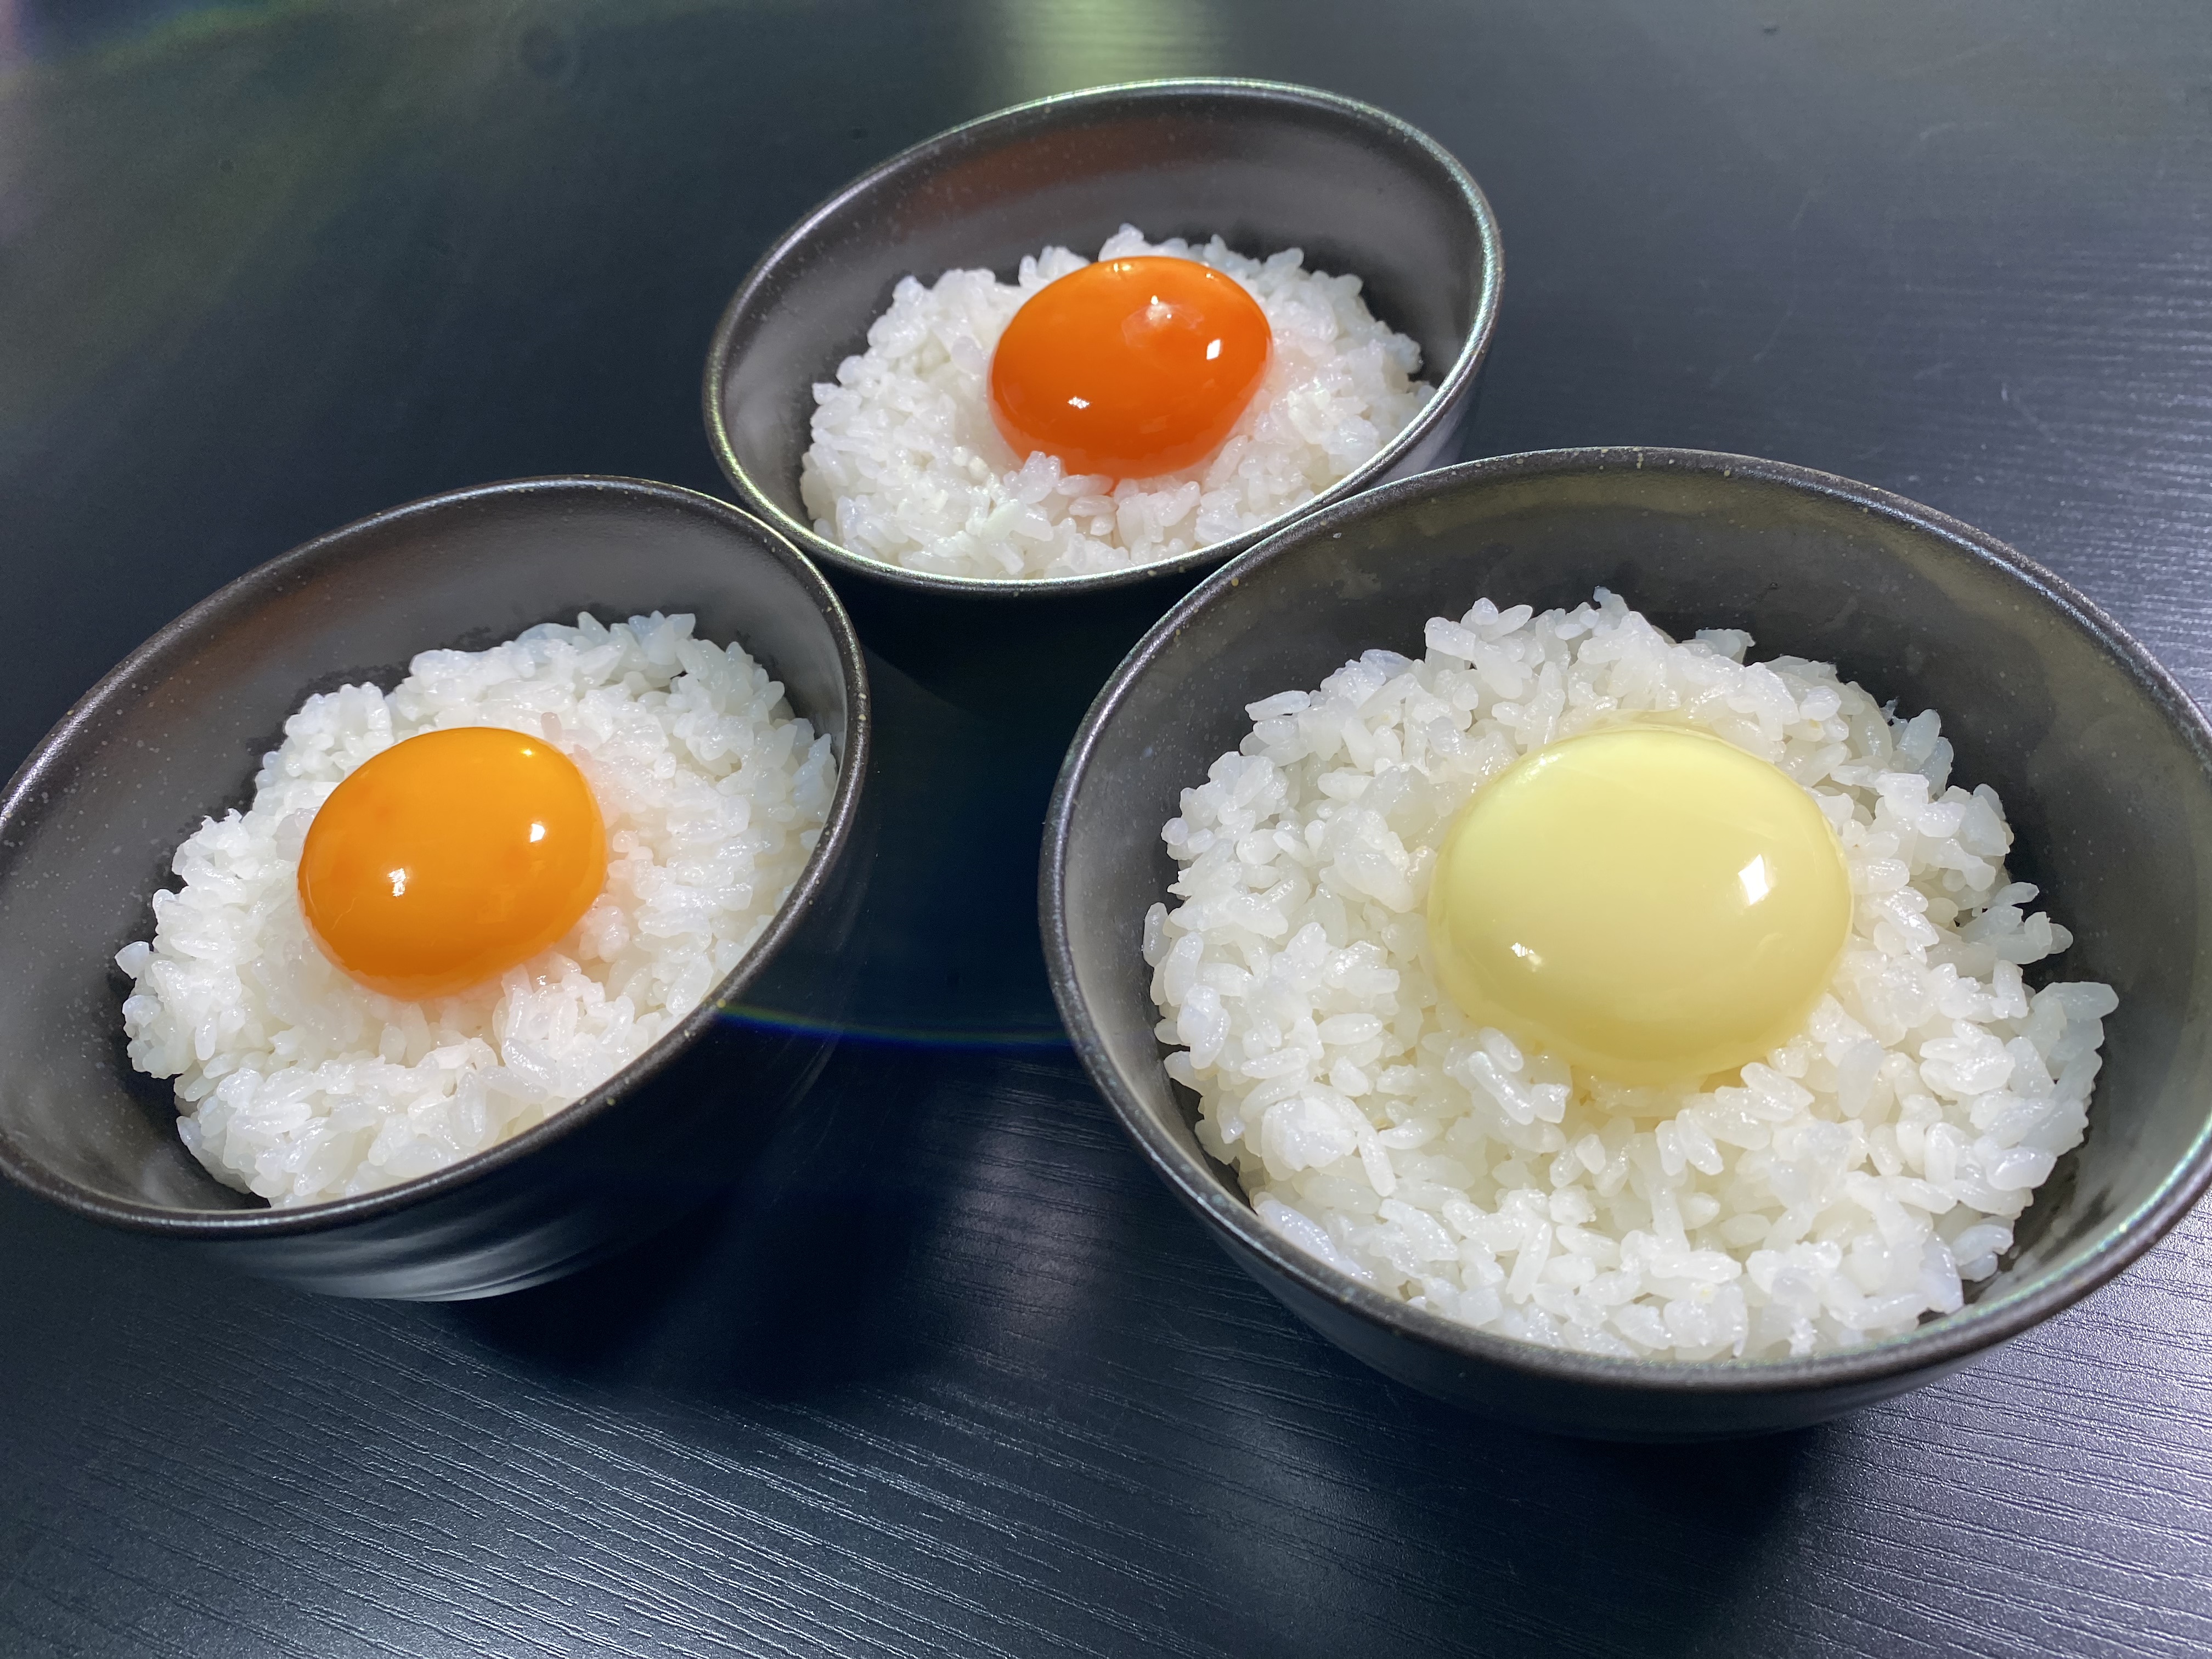 行列のできる幻の卵屋さんが池袋と北海道に出現！